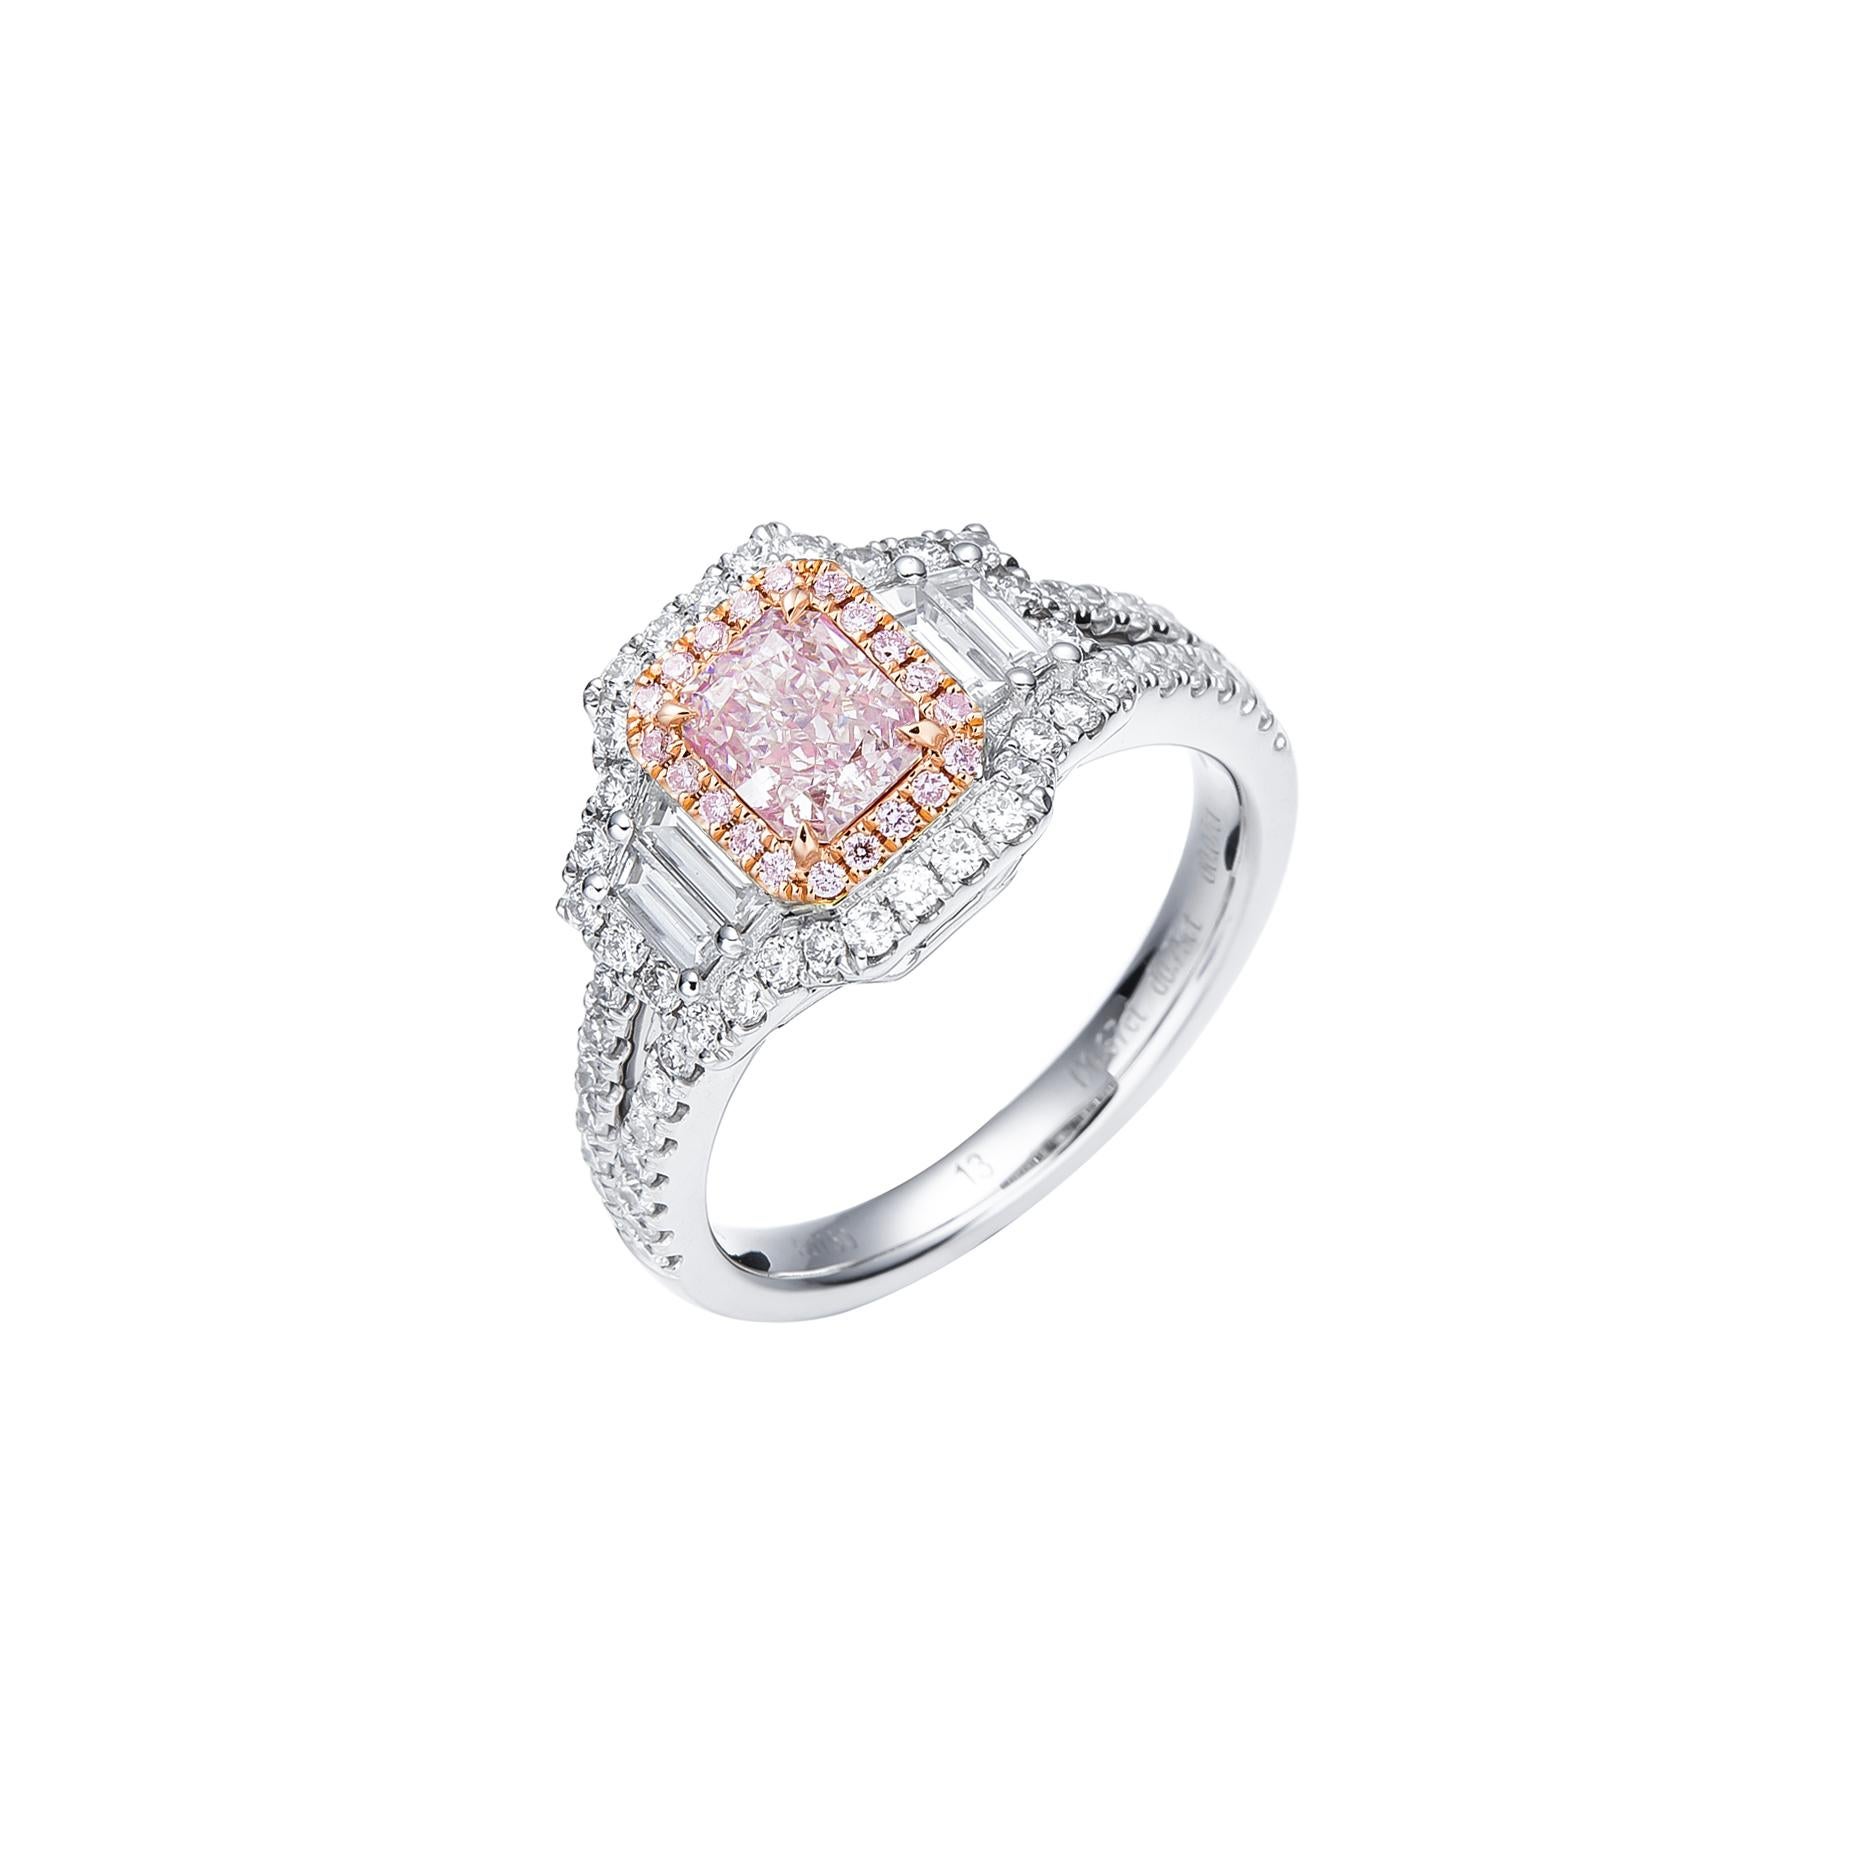 Enthüllen Sie Einzigartigkeit und Schönheit: Der bezaubernde GIA-zertifizierte 0,67ct Light Pinkish Brown Natural Cushion Cut Diamond Solitaire Ring ist ein wahres Meisterwerk, das mit seiner seltenen Anziehungskraft die Herzen erobert. Dieser mit